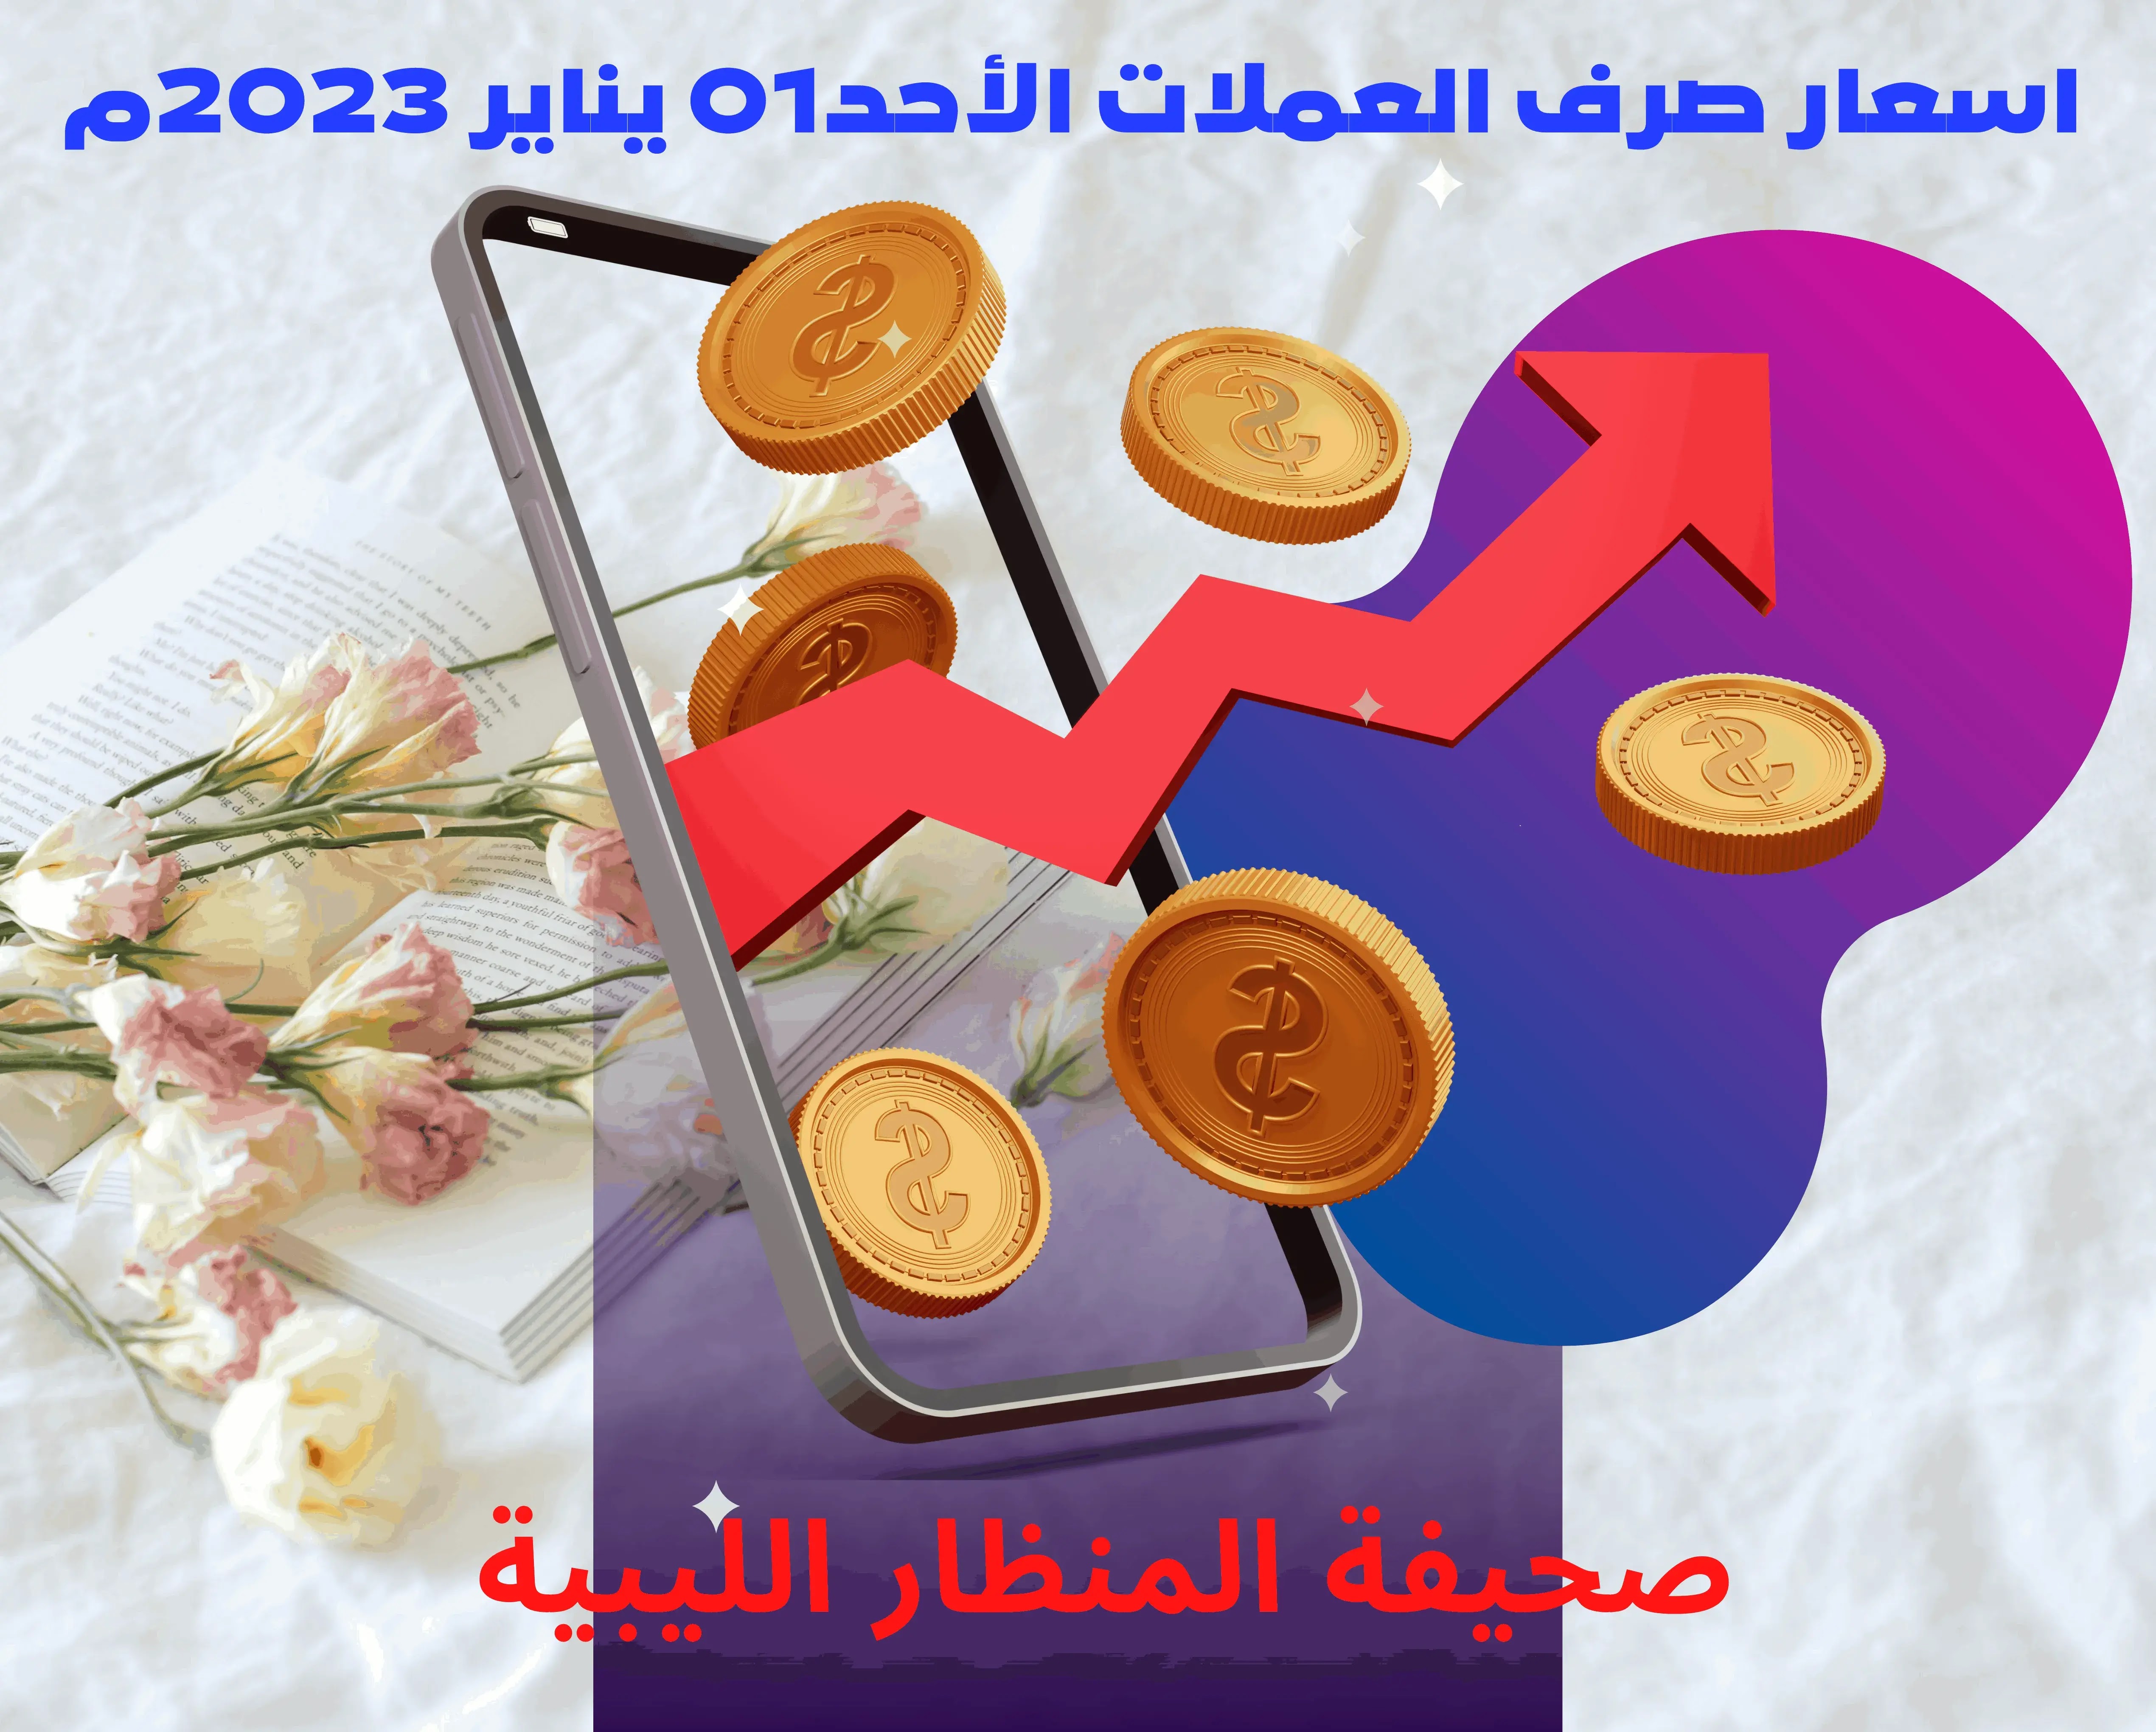 اسعار صرف العملات الأحد 01 يناير 2023م